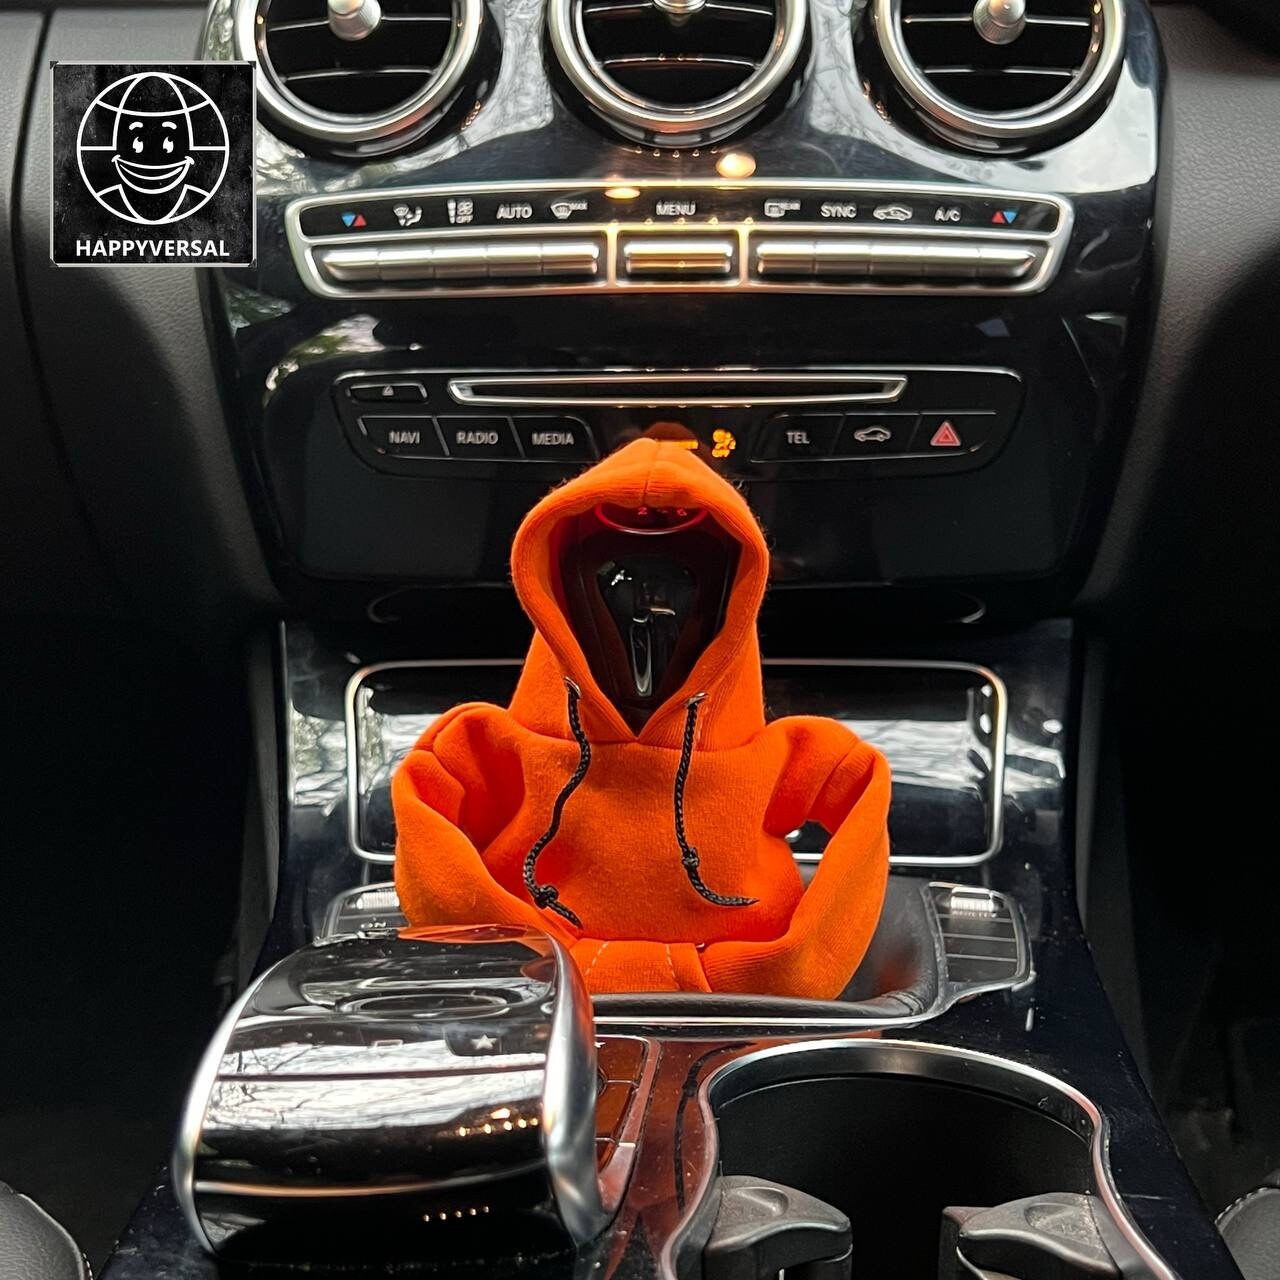 Lustige Schaltknauf Hoodie Abdeckung für Auto Shifter Knob Hoodie Dekor  passt manuelle und automatische Shifts Coole Schaltknauf Dekoration -  .de